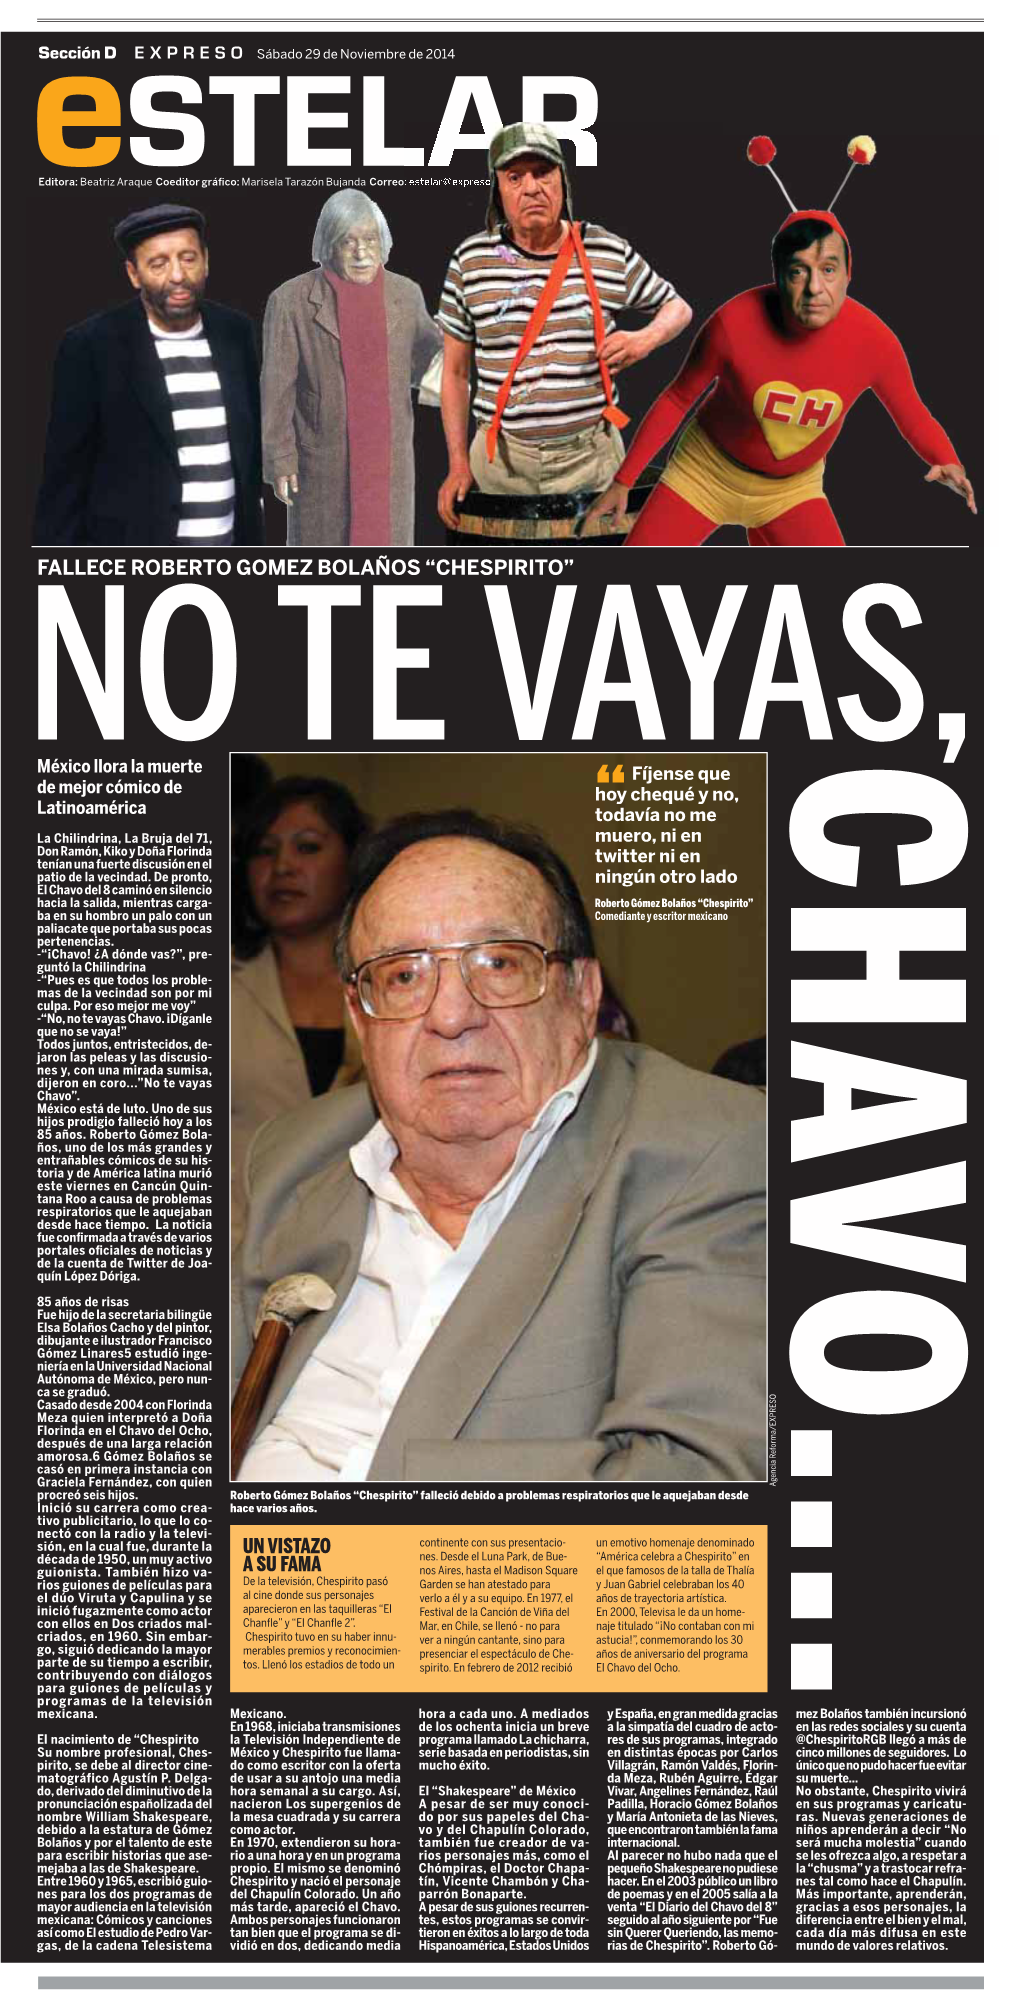 Fallece Roberto Gomez Bolaños “Chespirito”